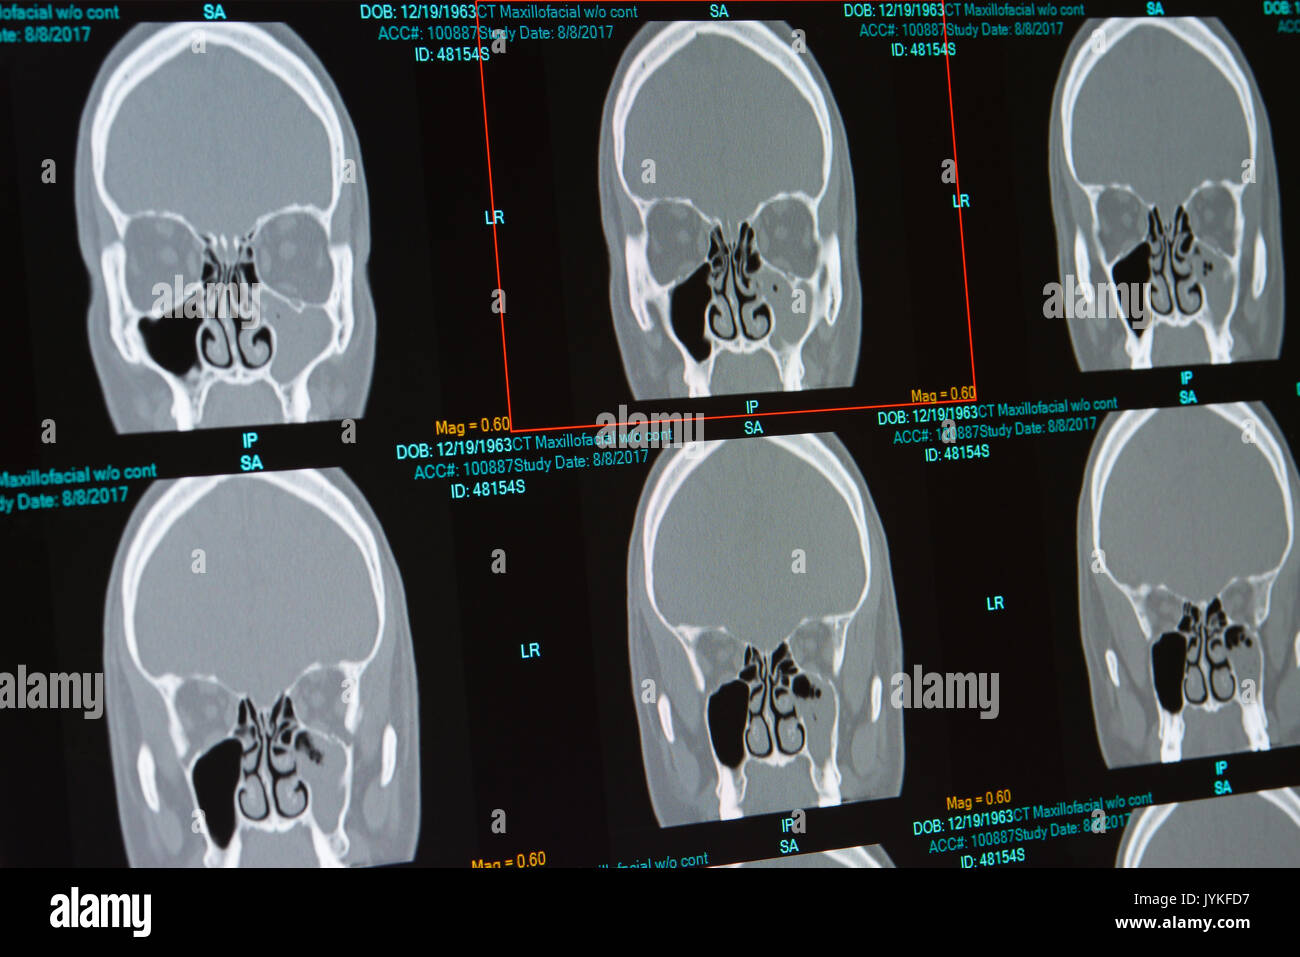 Tomografía computarizada de varones con infección de los senos paranasales (sinusitis) Llenado del seno maxilar izquierdo. También revela tabique desviado Foto de stock